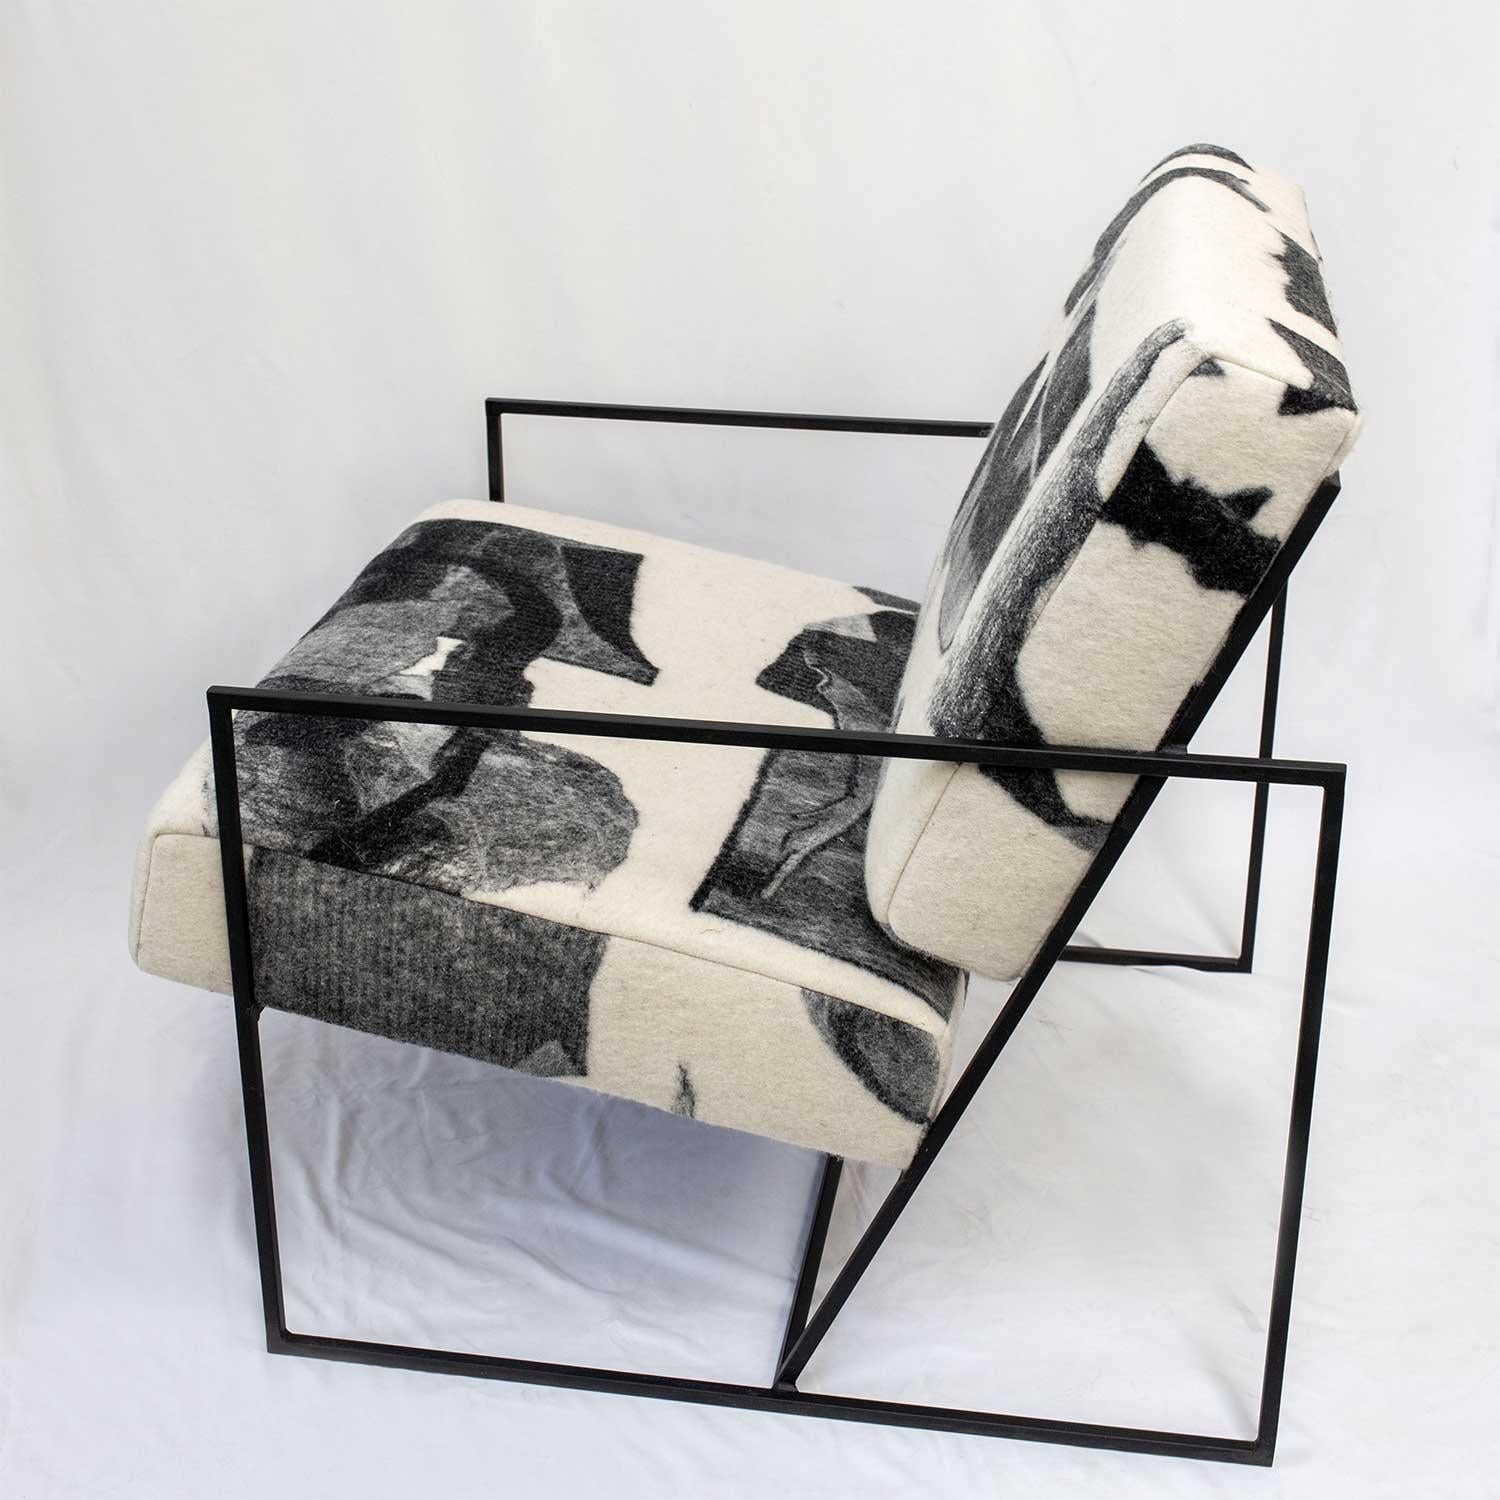 La chaise Ziggy est une structure en acier métallique solide proposée en noir mat ou en laiton et constitue l'écrin parfait pour le tissu en laine feutrée de JG SWITZER. 

Le métrage du tissu est un tissu unique en son genre, en laine 